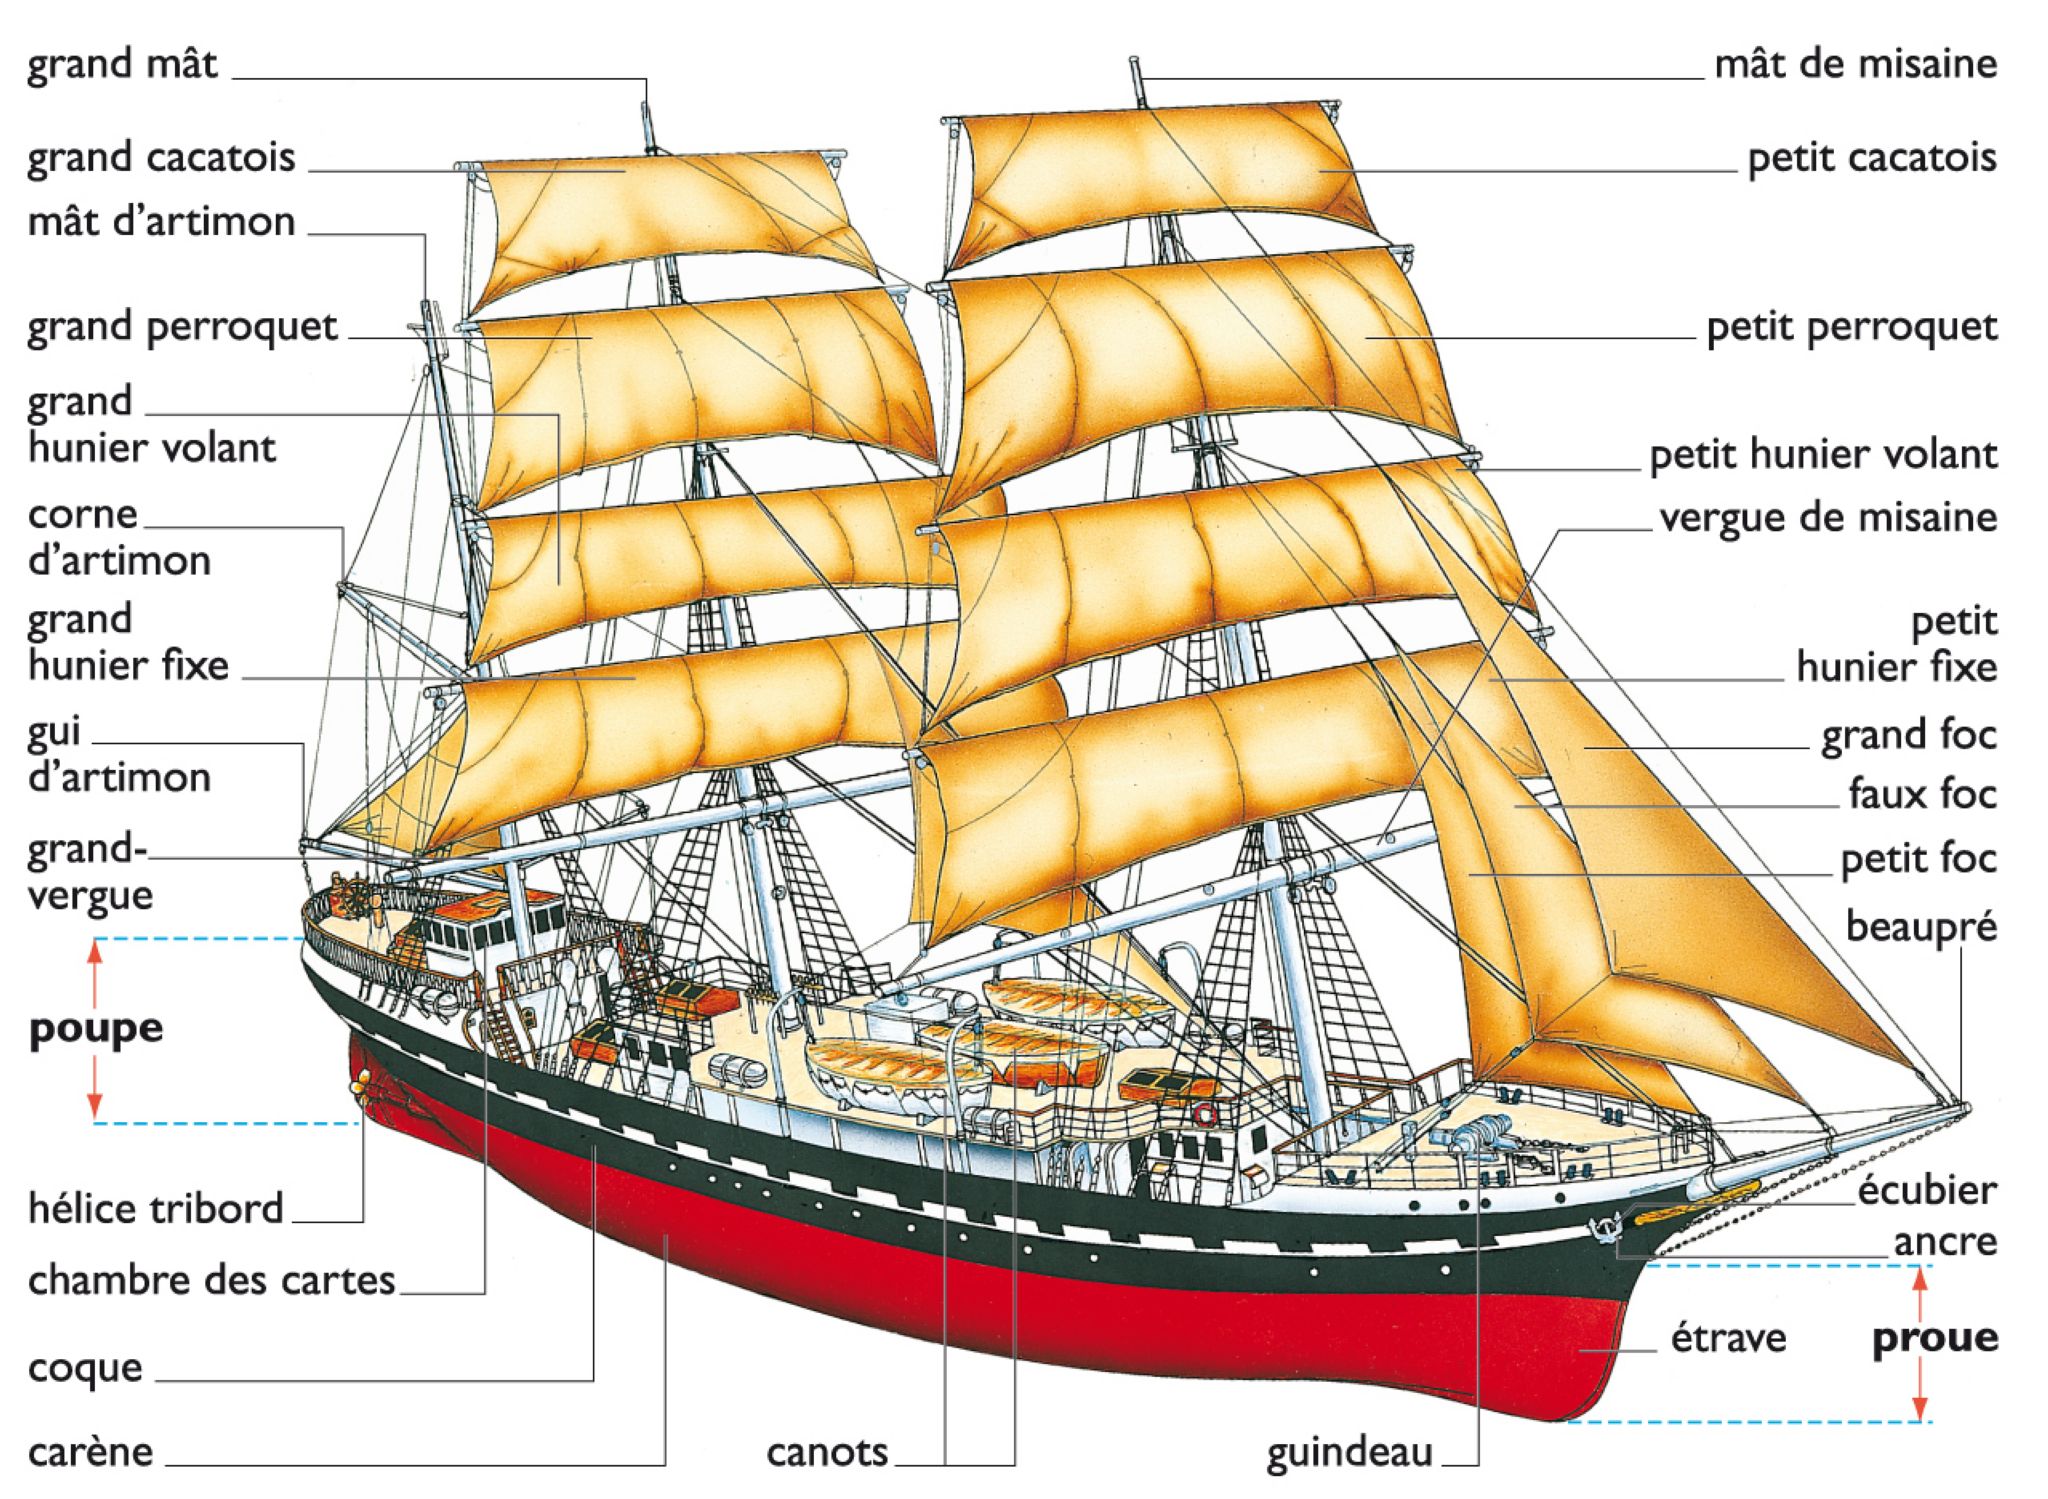 gréement, coque et superstructures d’un navire à voiles